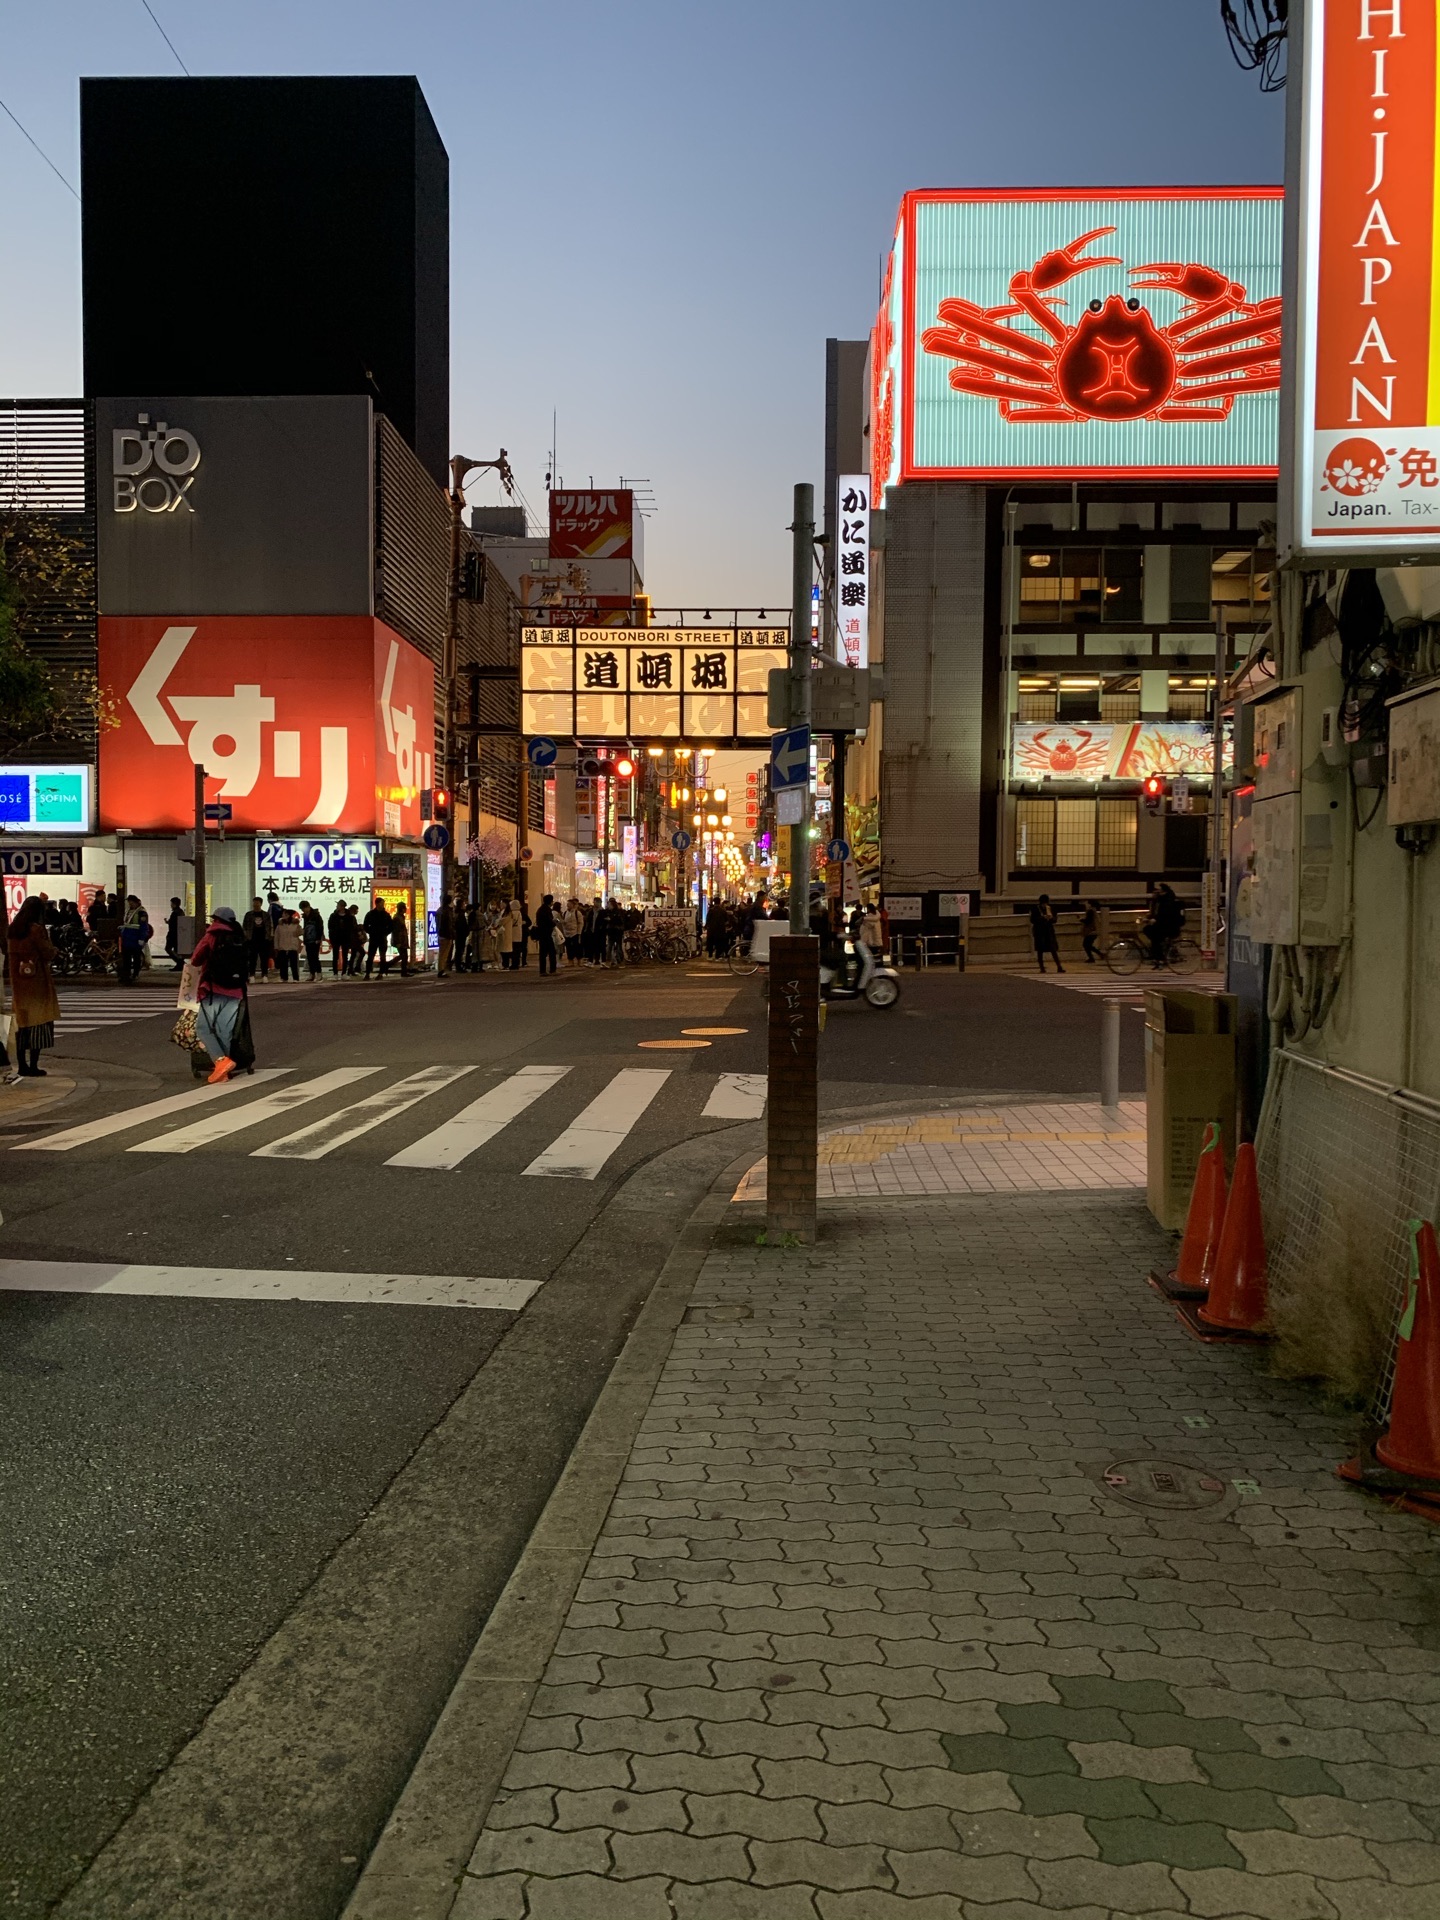 【携程攻略】大阪心斋桥景点,心斋桥是大阪最热闹的商圈之一 这里汇聚了各式各样不同档次的品牌和…